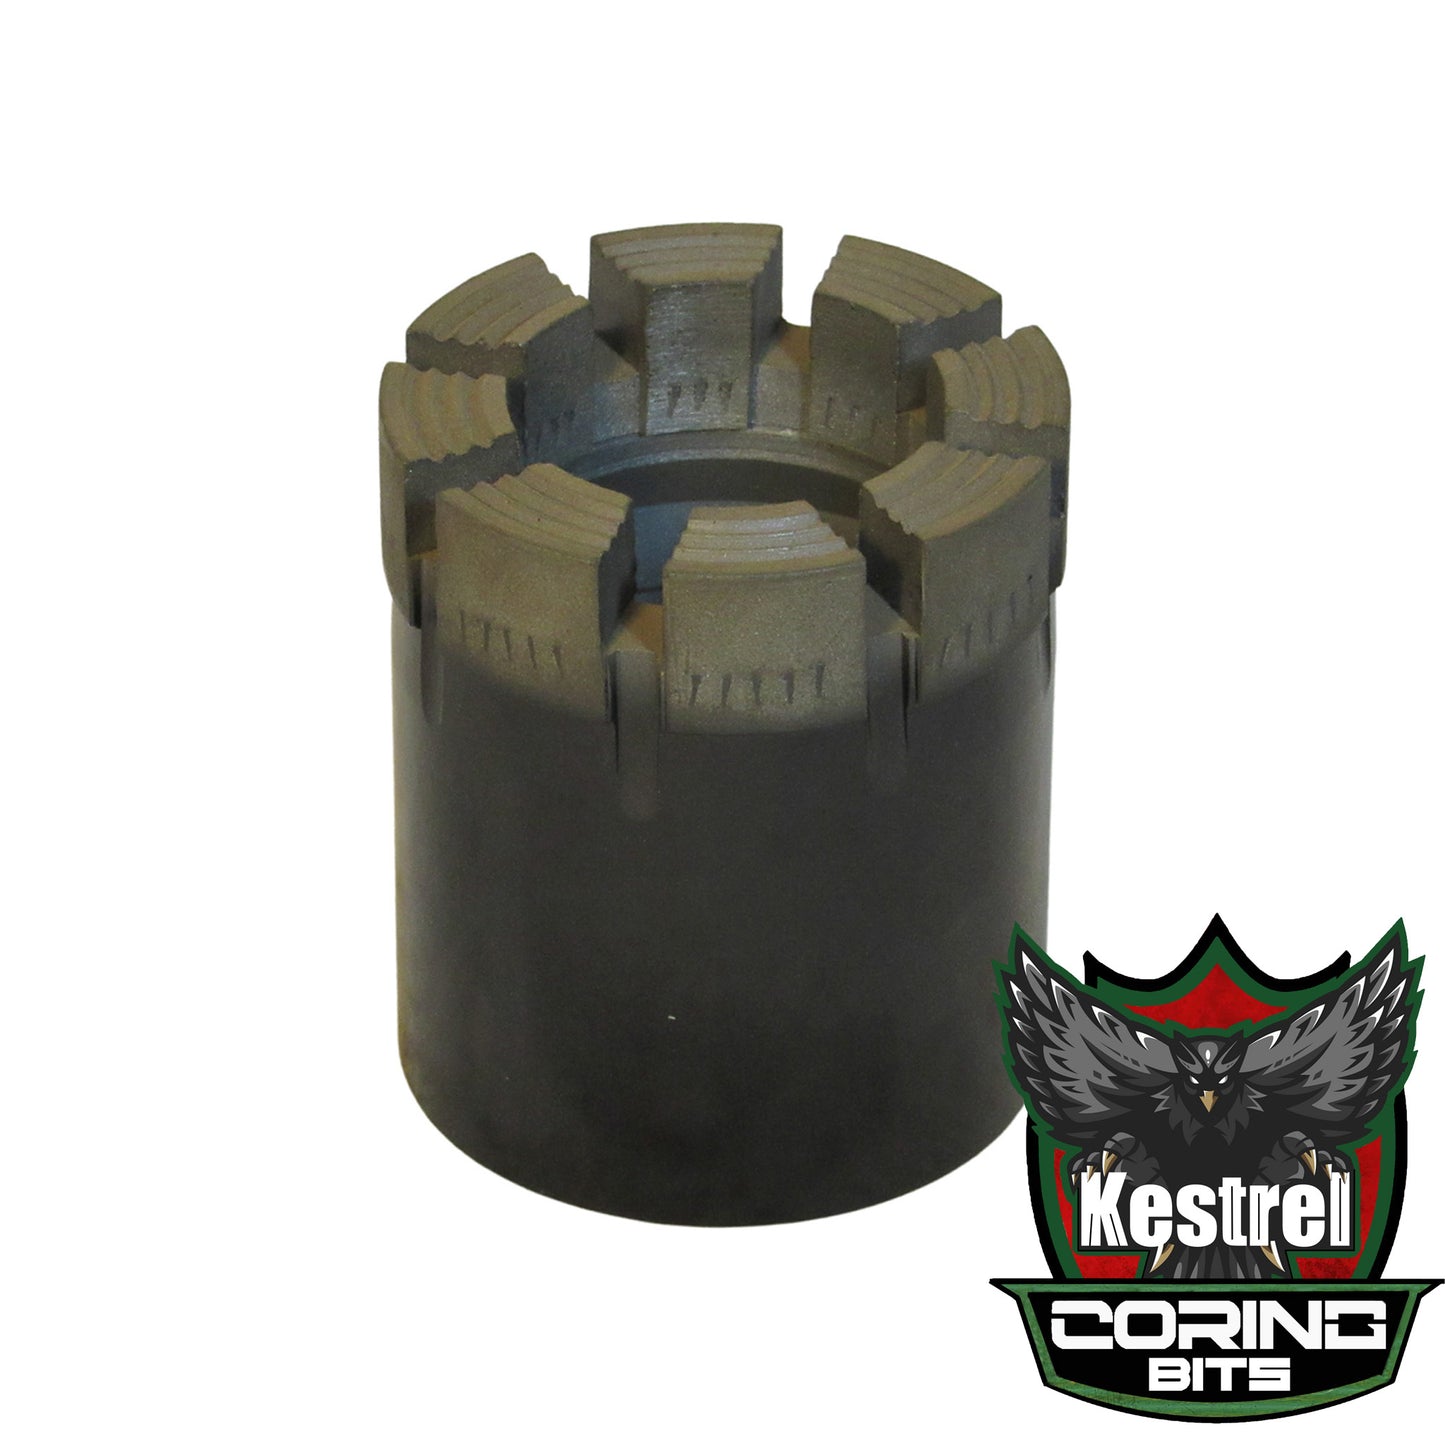 Kestrel 2 - NWL Core Drill Bit - Standard